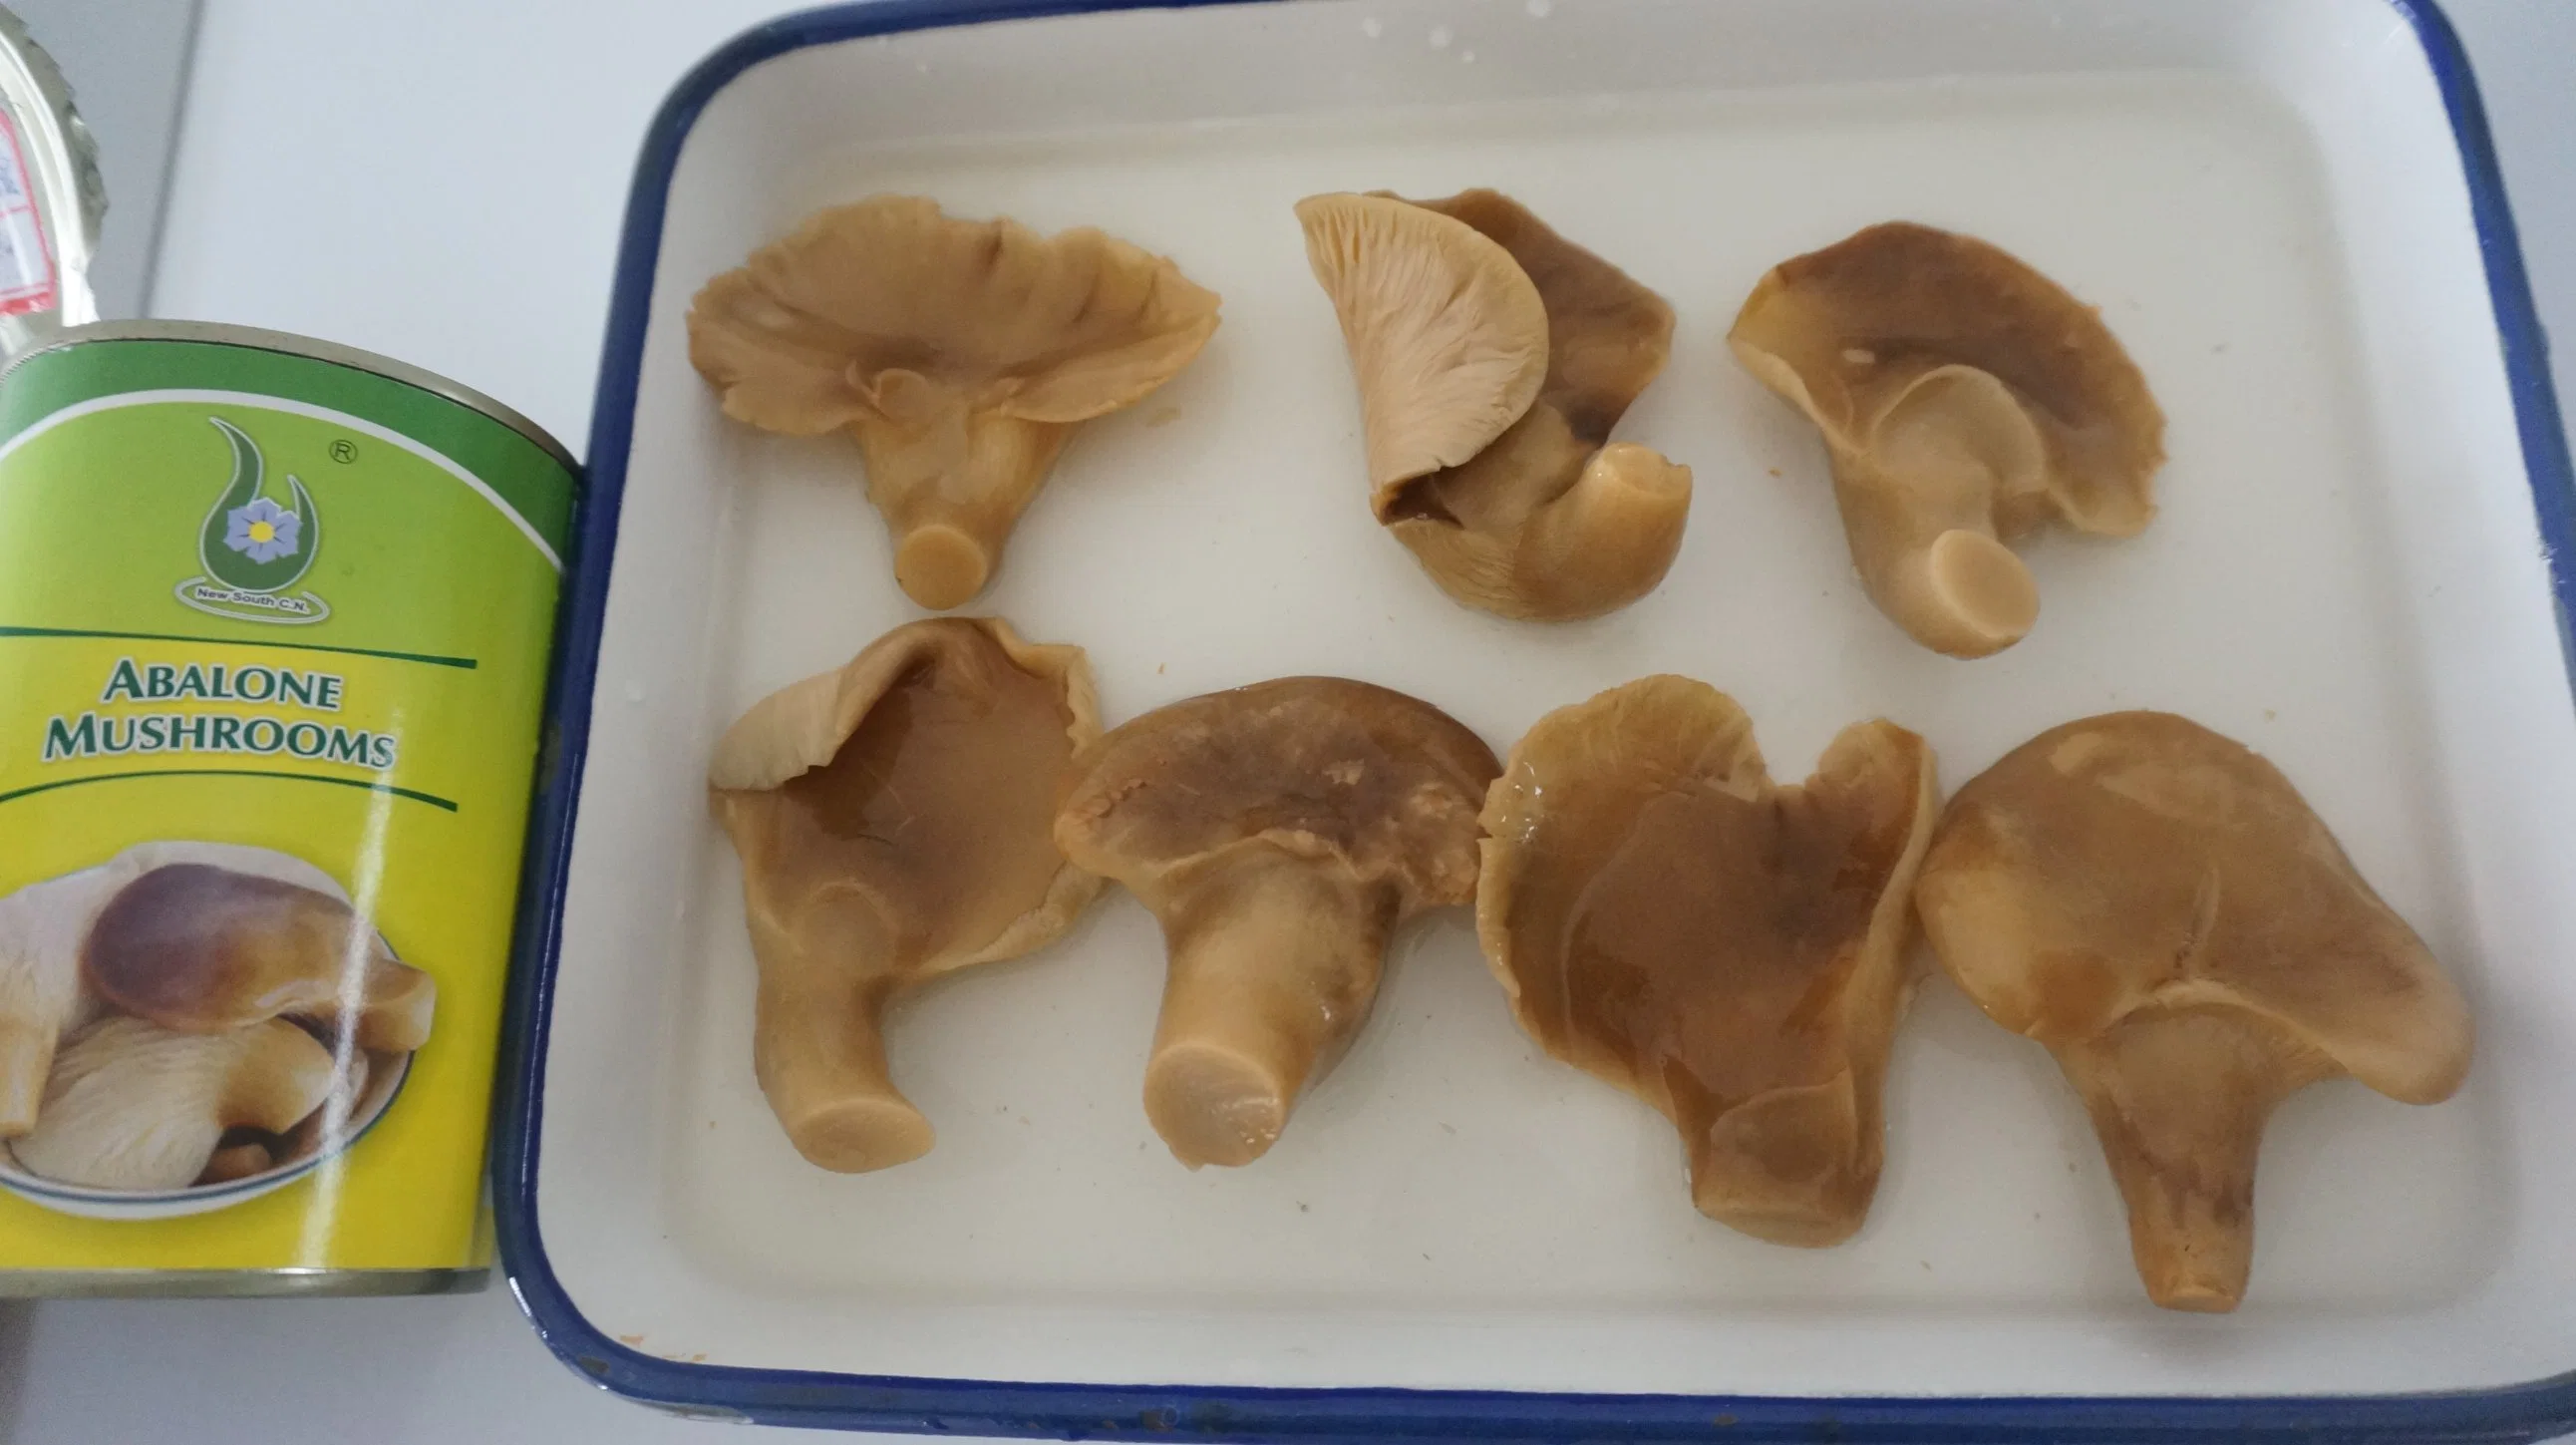 Консервированный устриц/Abalone Mushroom (pleurotus ostreatus) Экспорт продукта во Вьетнам